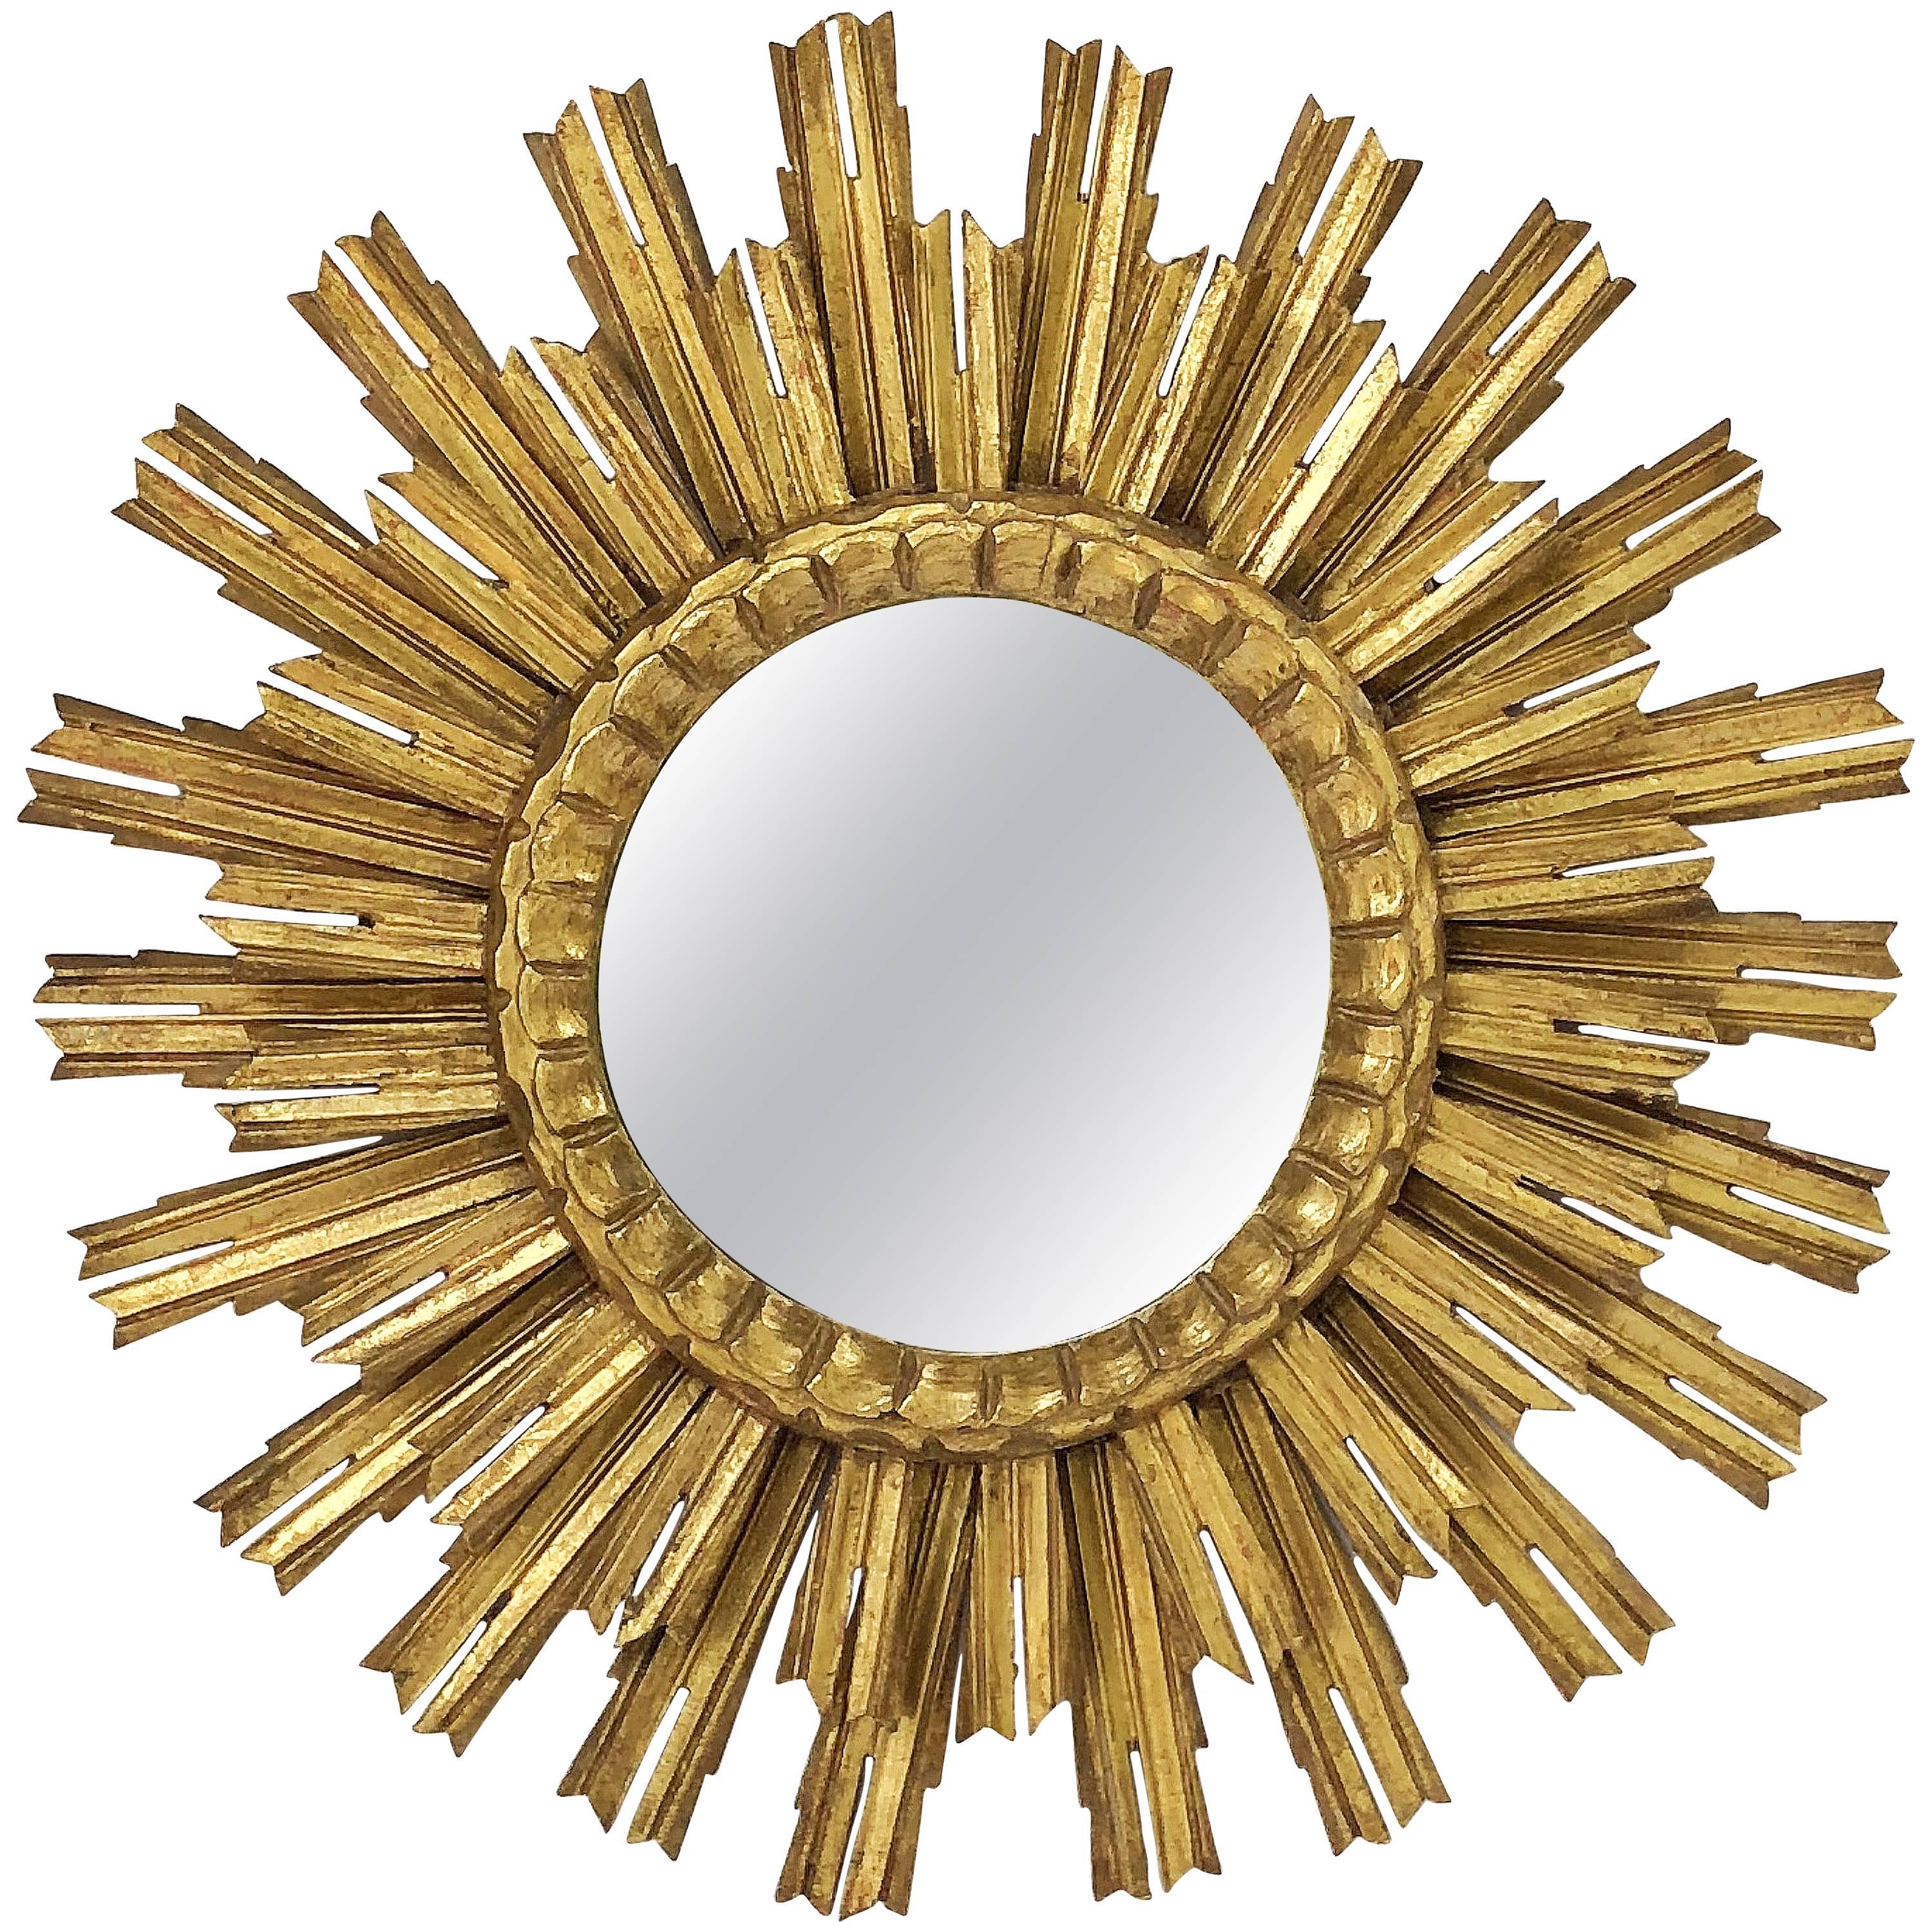 French Gilt Starburst or Sunburst Mirror (Diameter 25)